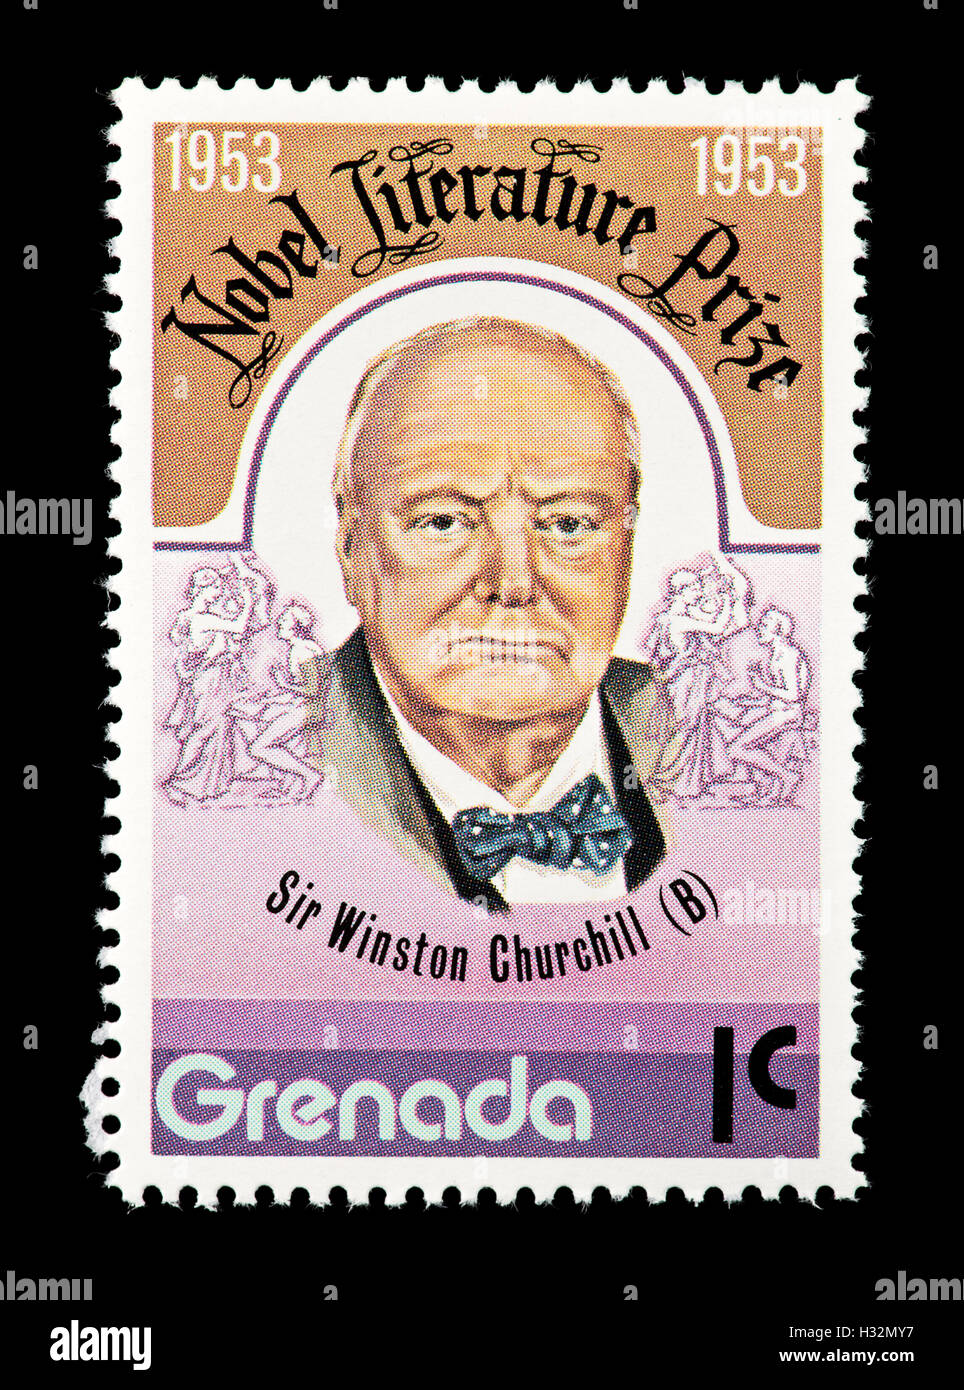 Francobollo raffigurante Grenada Sir Winston Churchill e la sua vittoria  del 1953 Premio Nobel per la letteratura Foto stock - Alamy